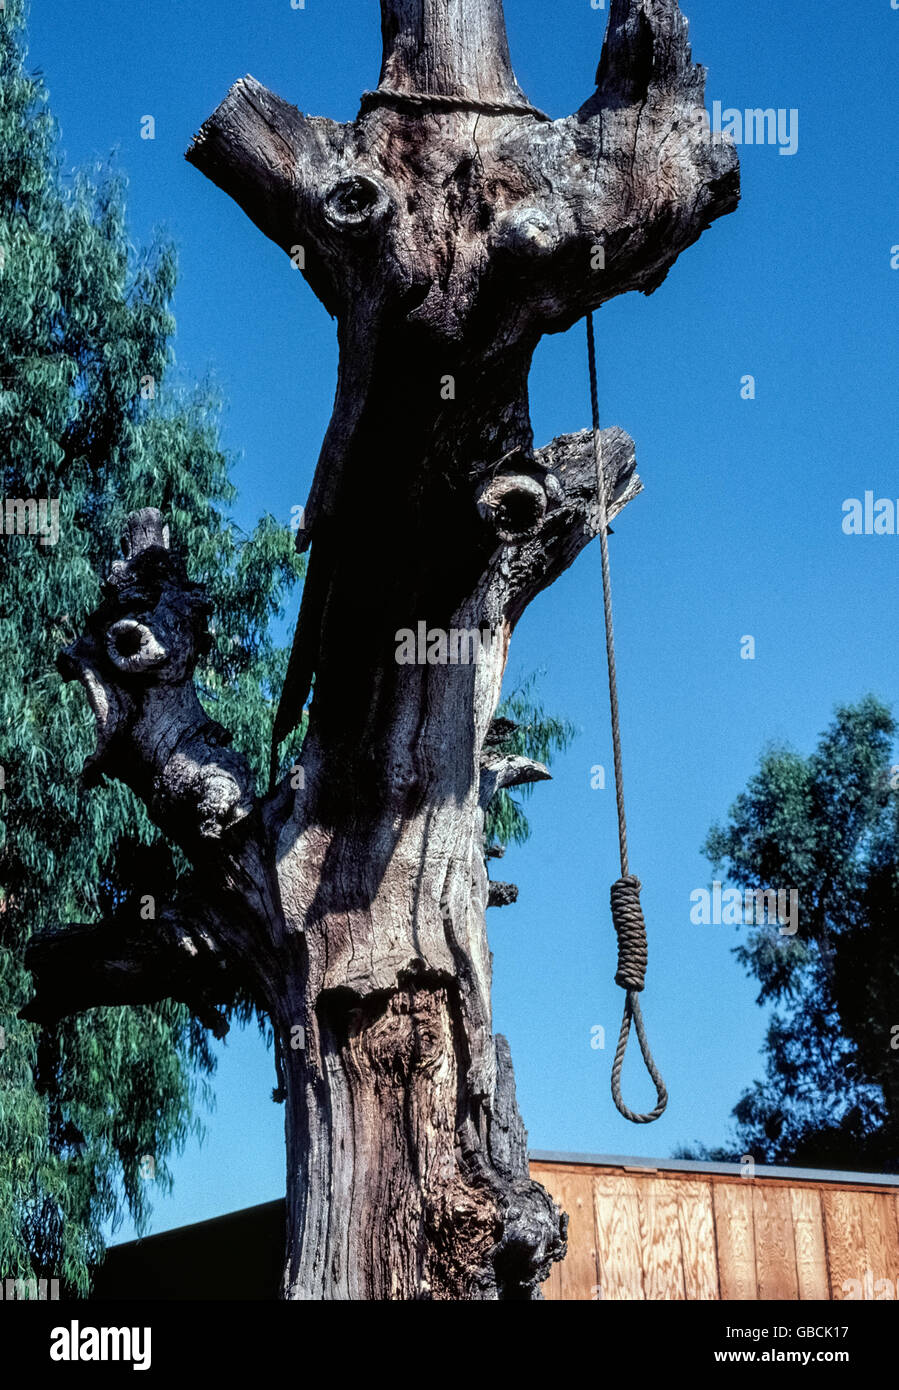 Eine Schlinge Seil mit einem großen Slipknot ruht sich aus einer alten Eiche, die des Henkers Baum im alten Stadt Calabasas im Los Angeles County, Kalifornien, USA genannt wurde. Die jahrhundertealten Eiche starb in den 1960er Jahren aber es diente als ein historisches Wahrzeichen bis zum Umfallen während eines Sturms im Jahr 1995. Diese Schlinge wurde im Jahr 1975 aufgereiht; niemand erinnert sich ob gab es überhaupt Krawatte Parteien (Tapeten) in Calabasas. Fotografiert im Jahr 1982. Stockfoto